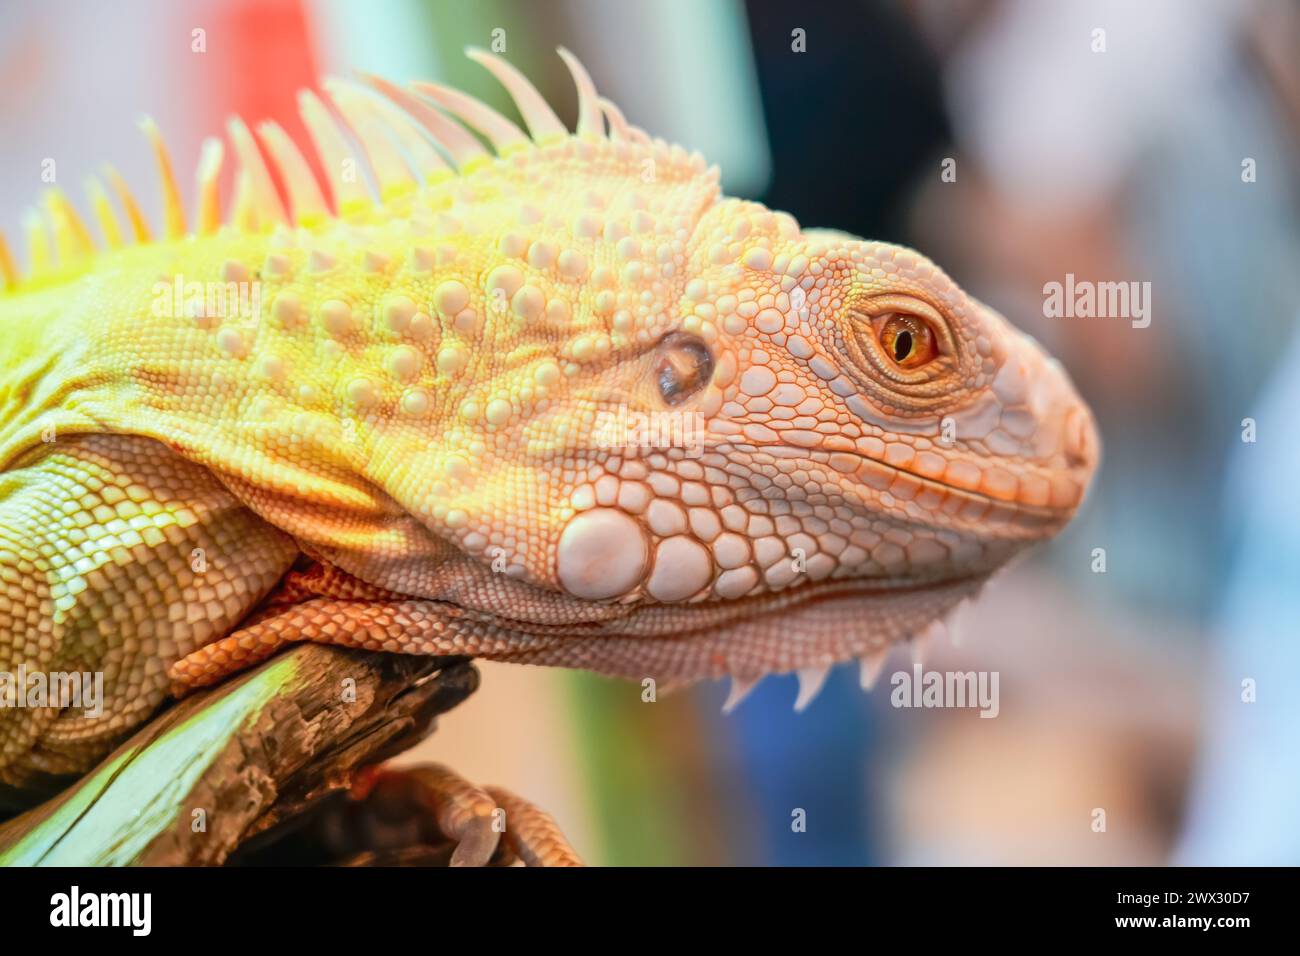 Iguane lézard jaune blanc avec les yeux orange se lèche lui-même montrant la langue Banque D'Images